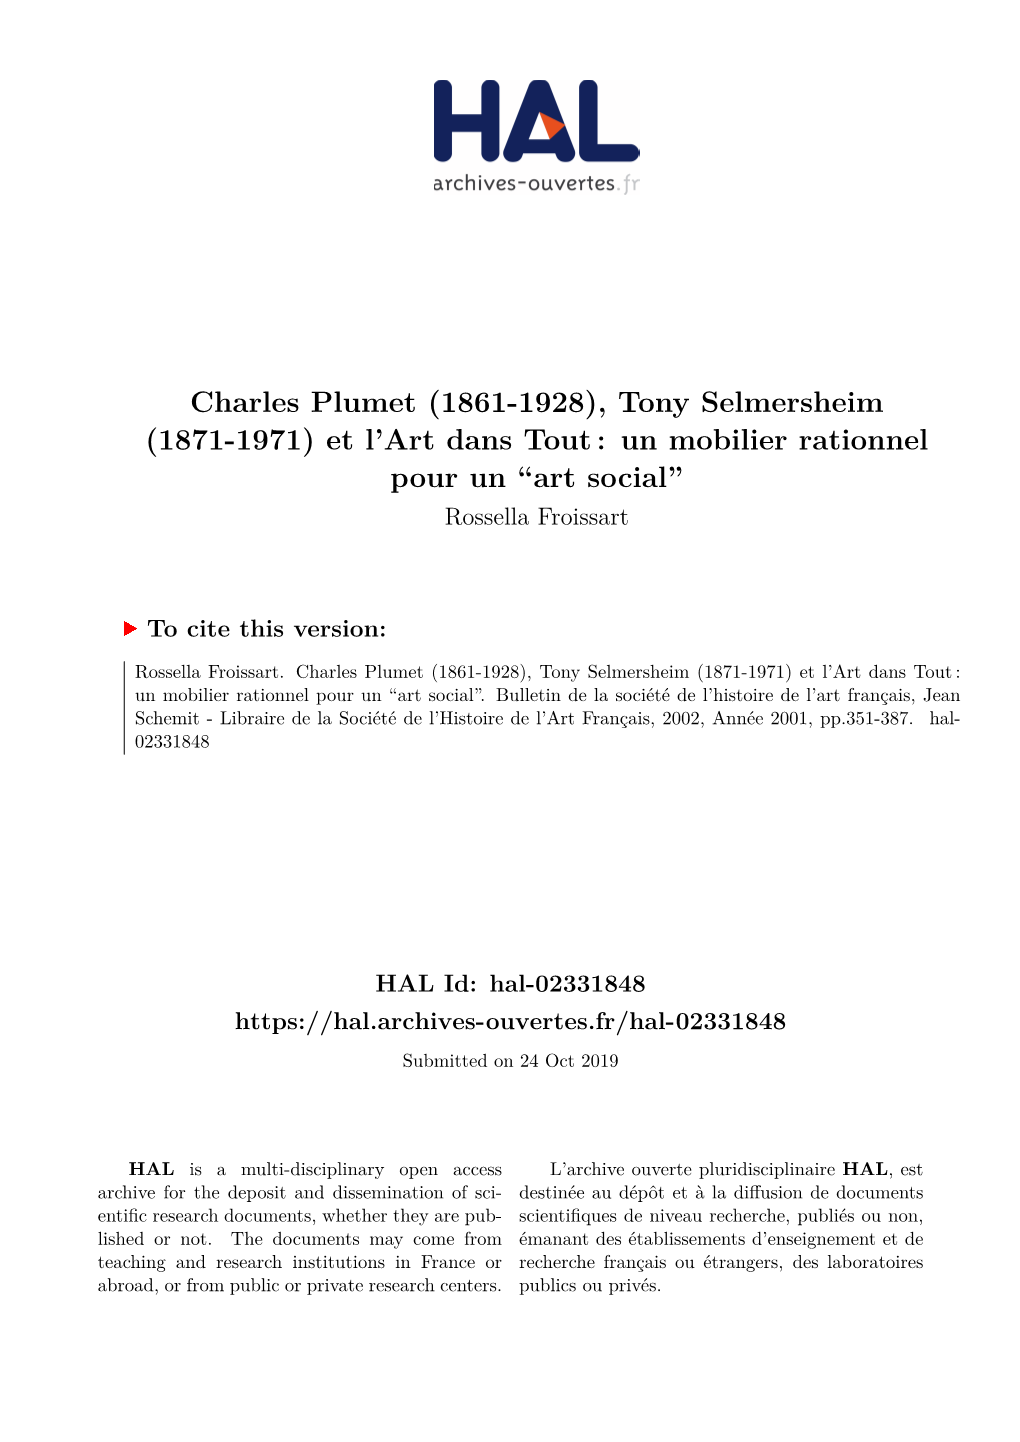 Charles Plumet (1861-1928), Tony Selmersheim (1871-1971) Et L’Art Dans Tout : Un Mobilier Rationnel Pour Un “Art Social” Rossella Froissart